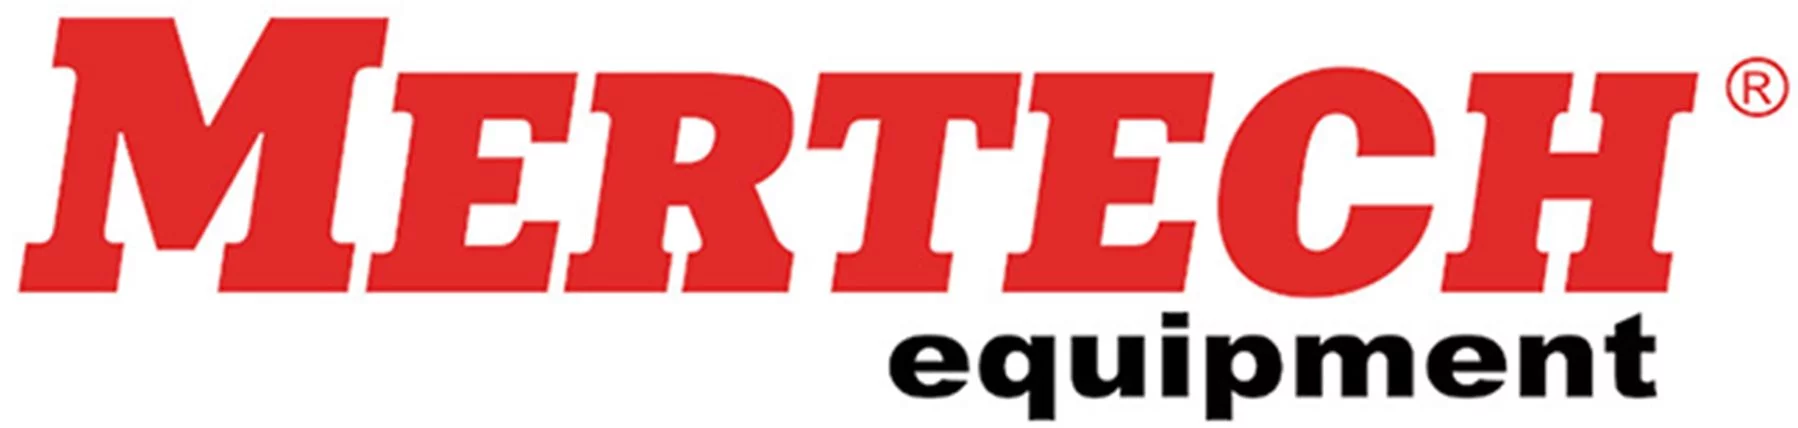 Mertech логотип изображение